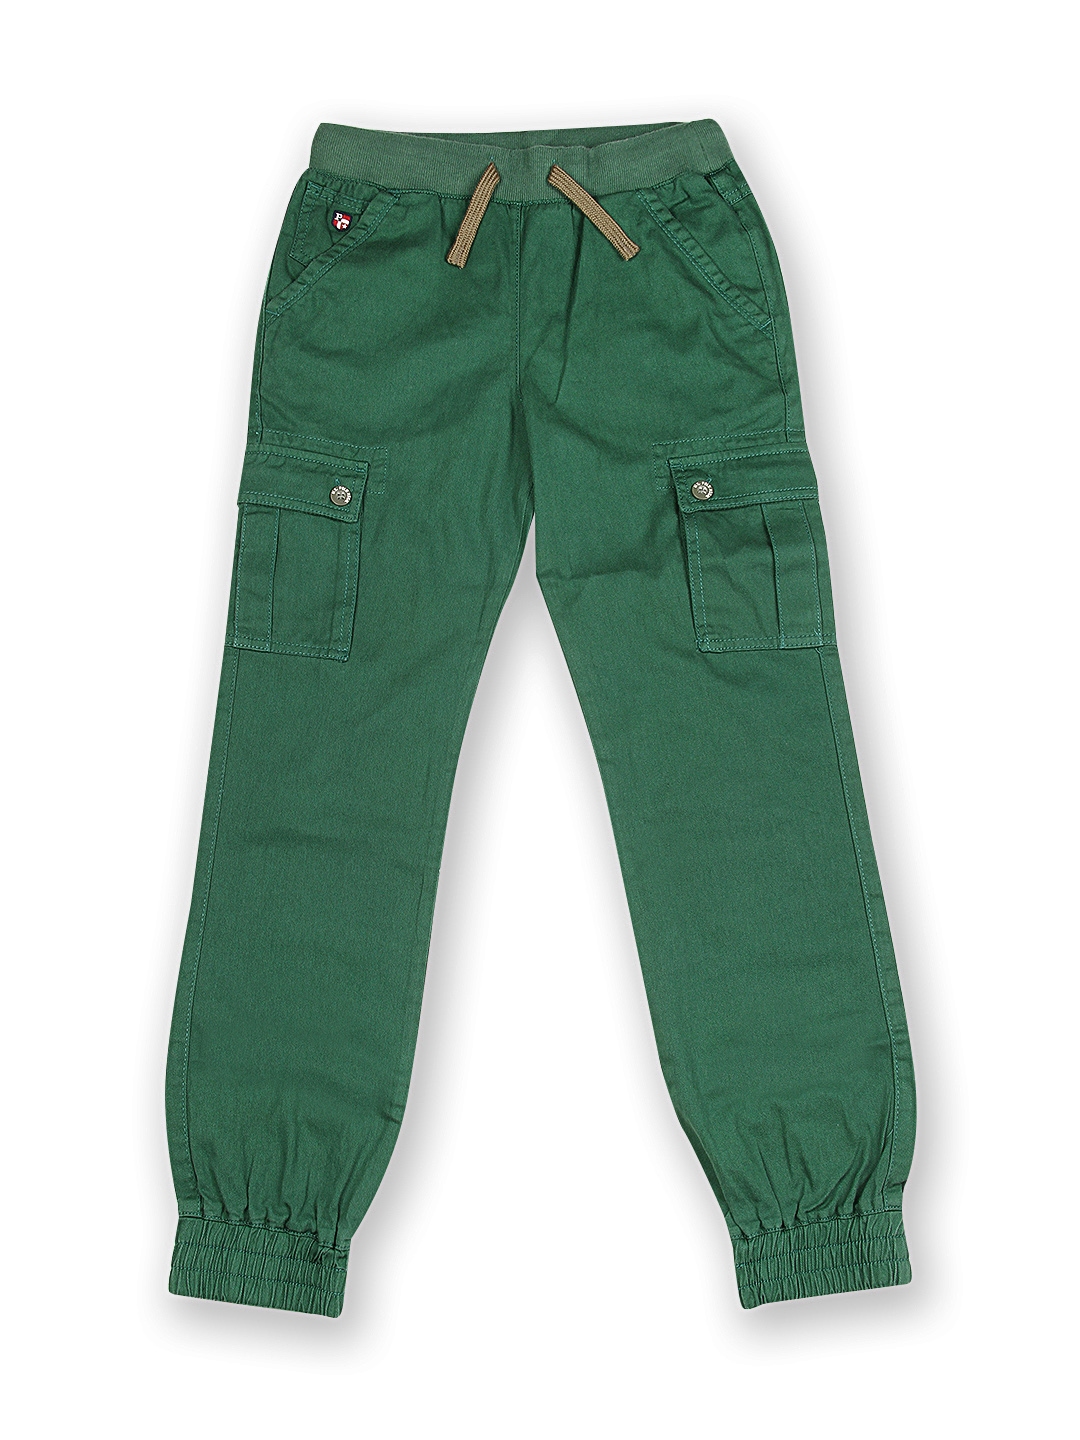 Boys Jeans for sale  Boys Pants best deals discount  vouchers online   Lazada Philippines